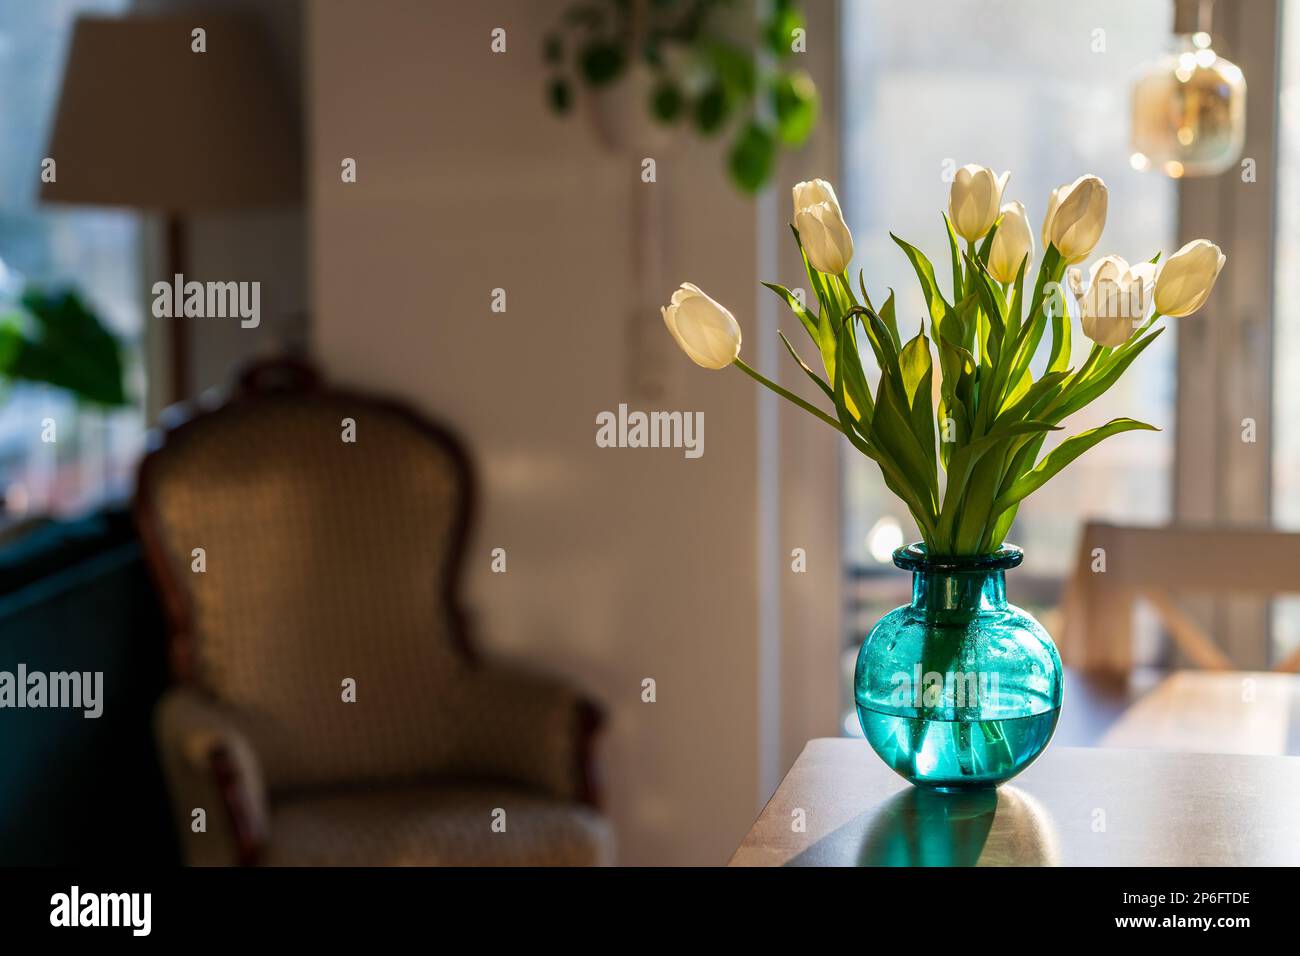 Un bouquet de tulipes blanches dans un vase en verre bleu vert au soleil du matin. Décoration intérieure moderne, fleurs de printemps fraîches dans un salon confortable. Banque D'Images